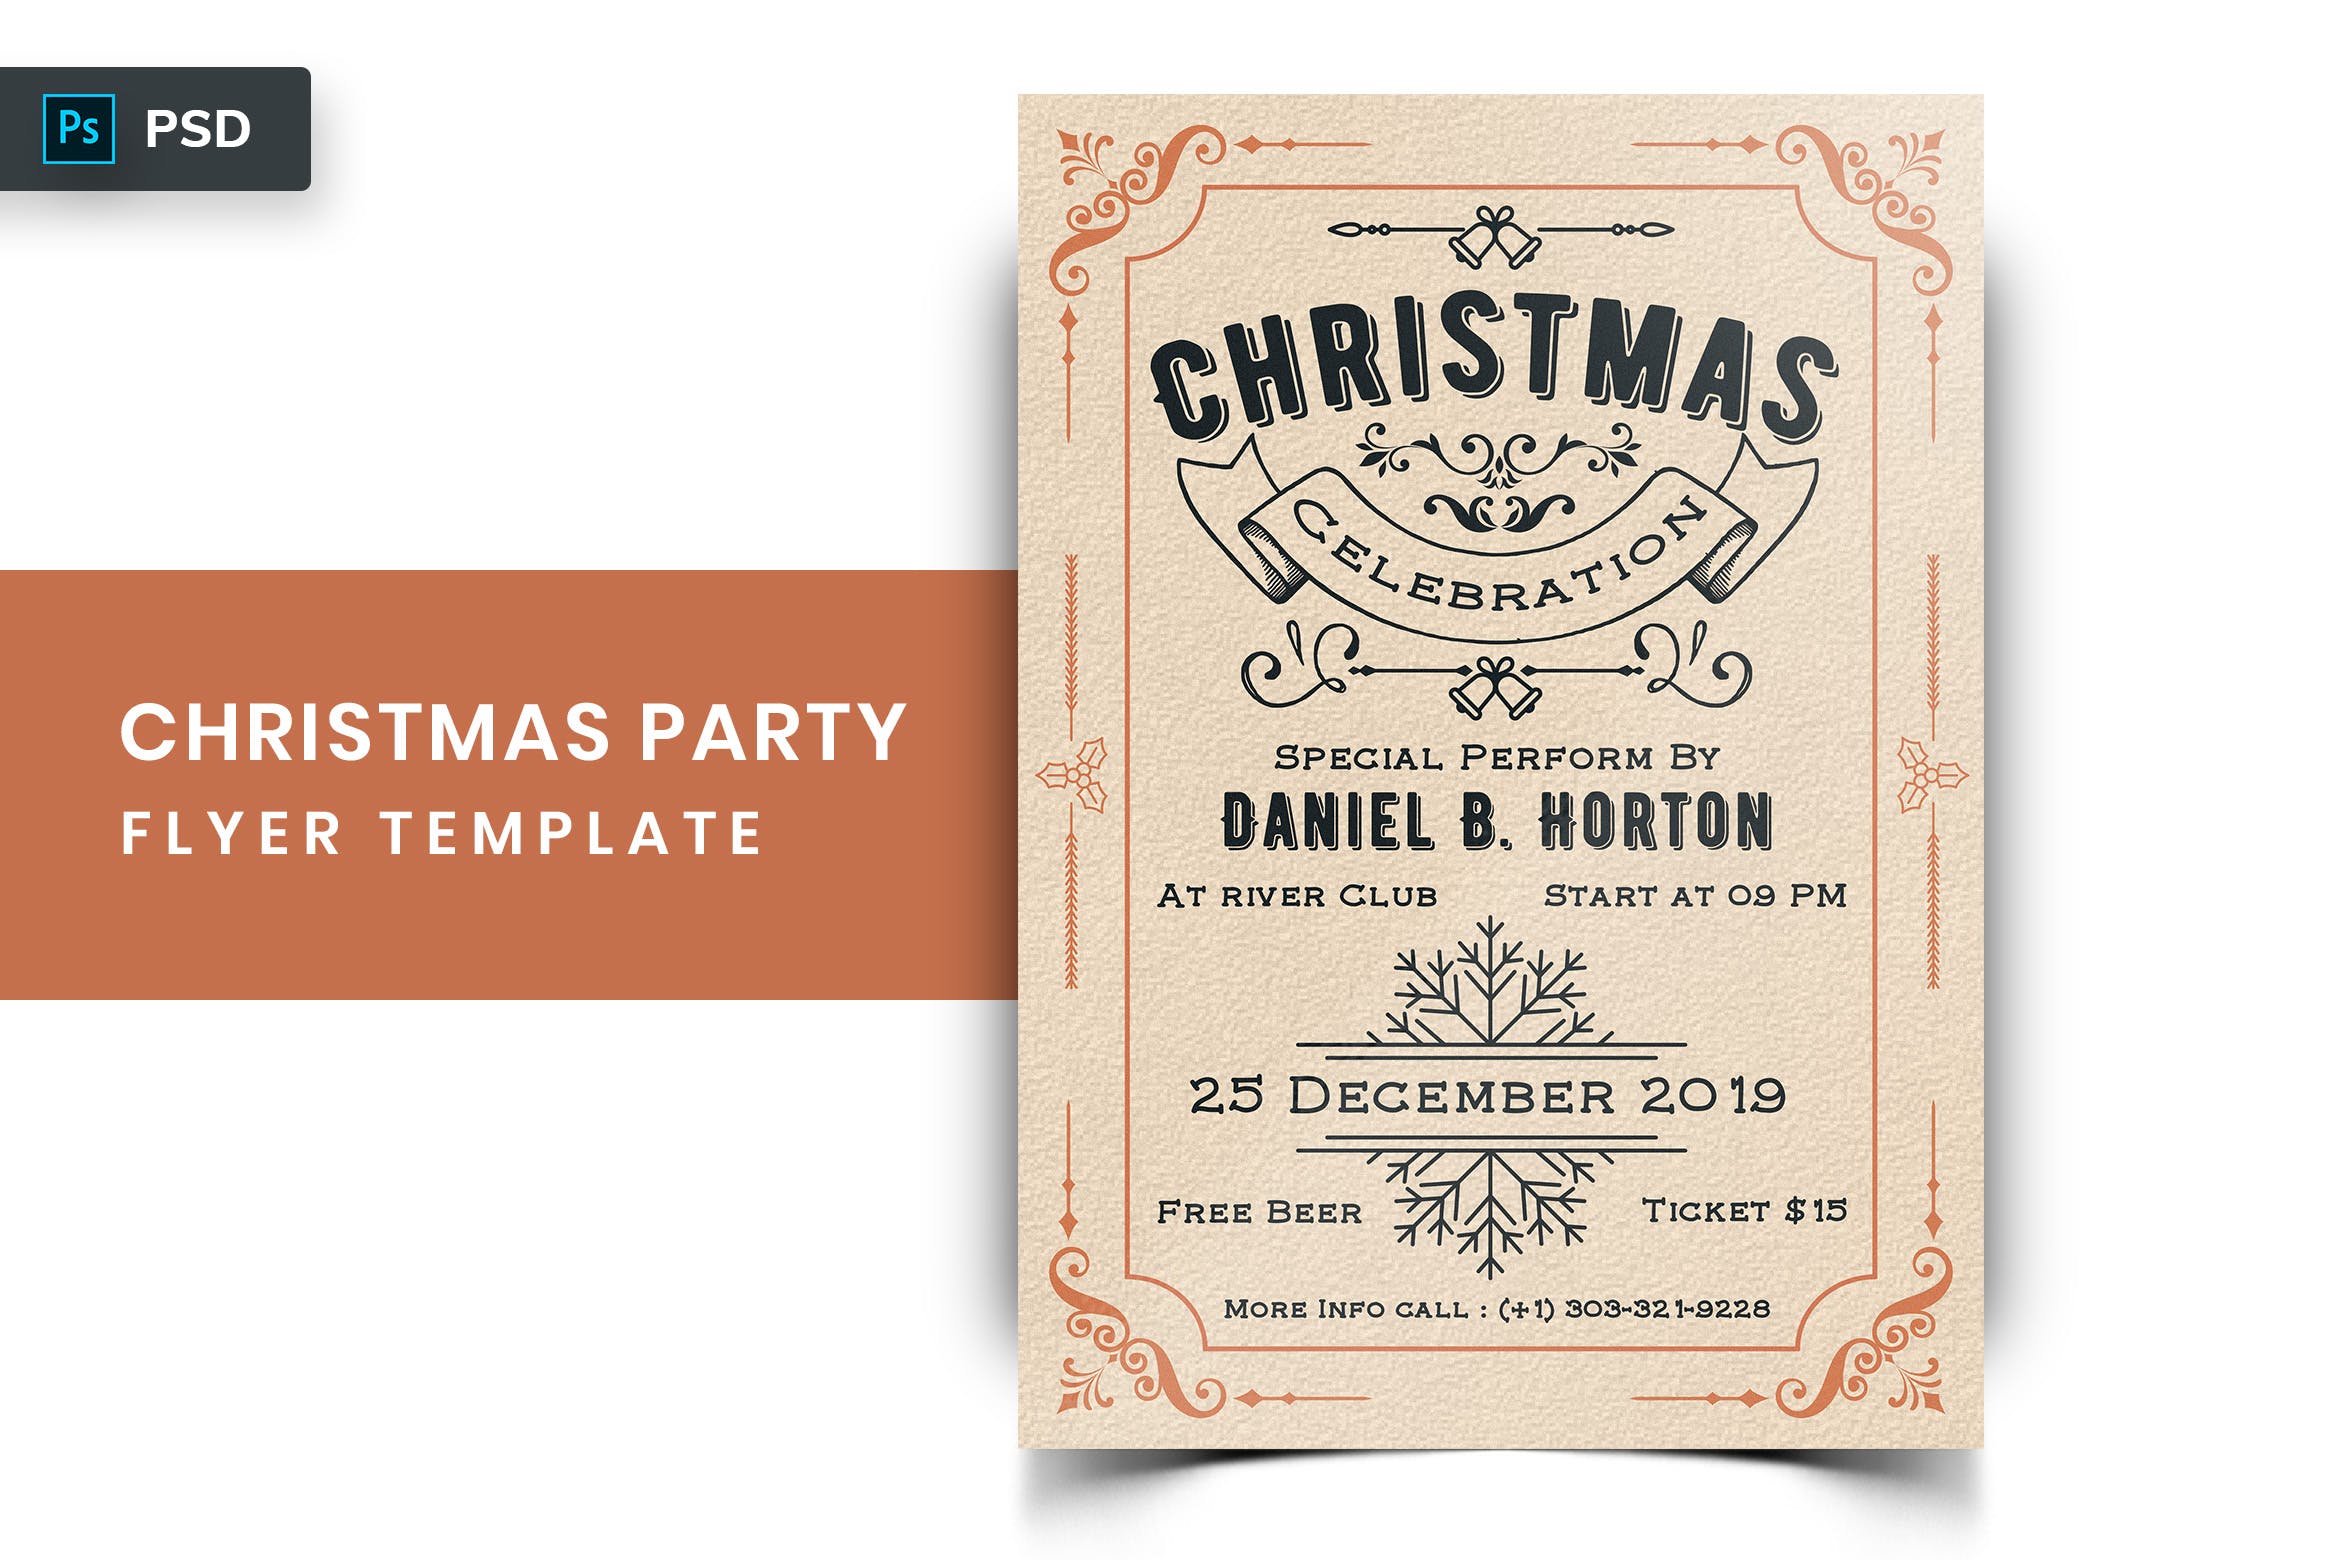 复古风格圣诞节主题派对邀请海报传单模板v1 Christmas Party Flyer-03插图